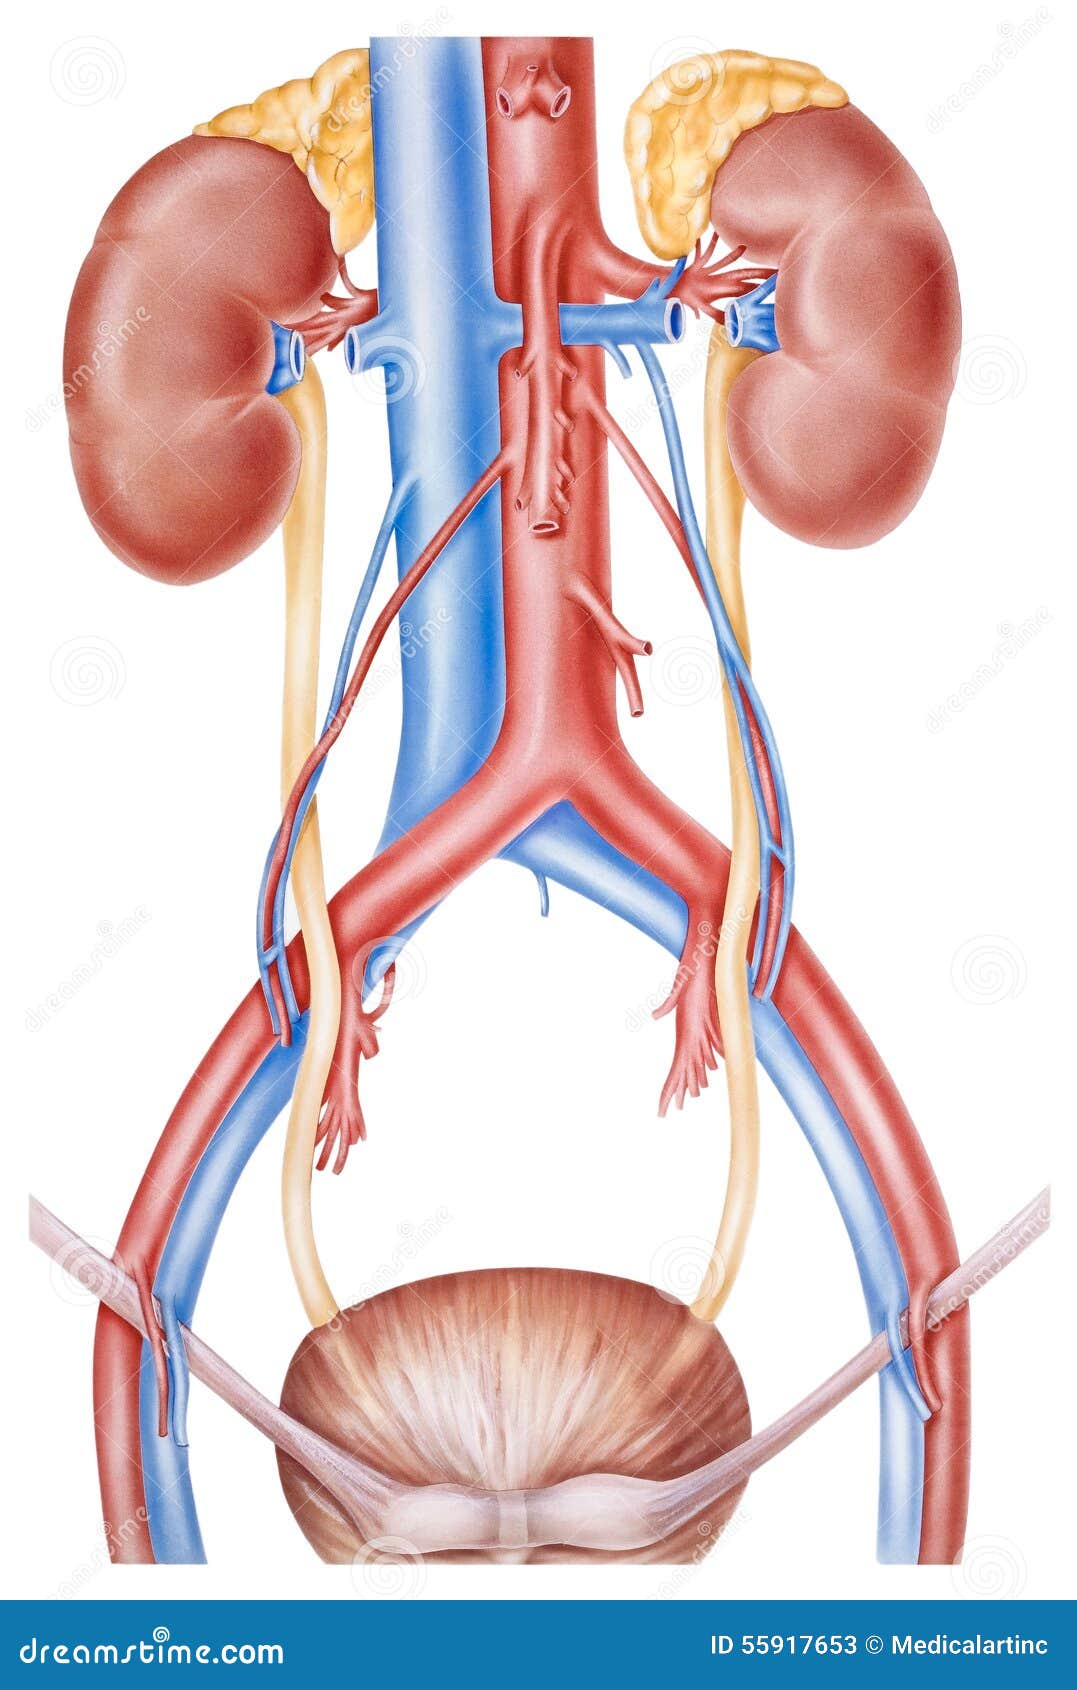 kidneys and ureters